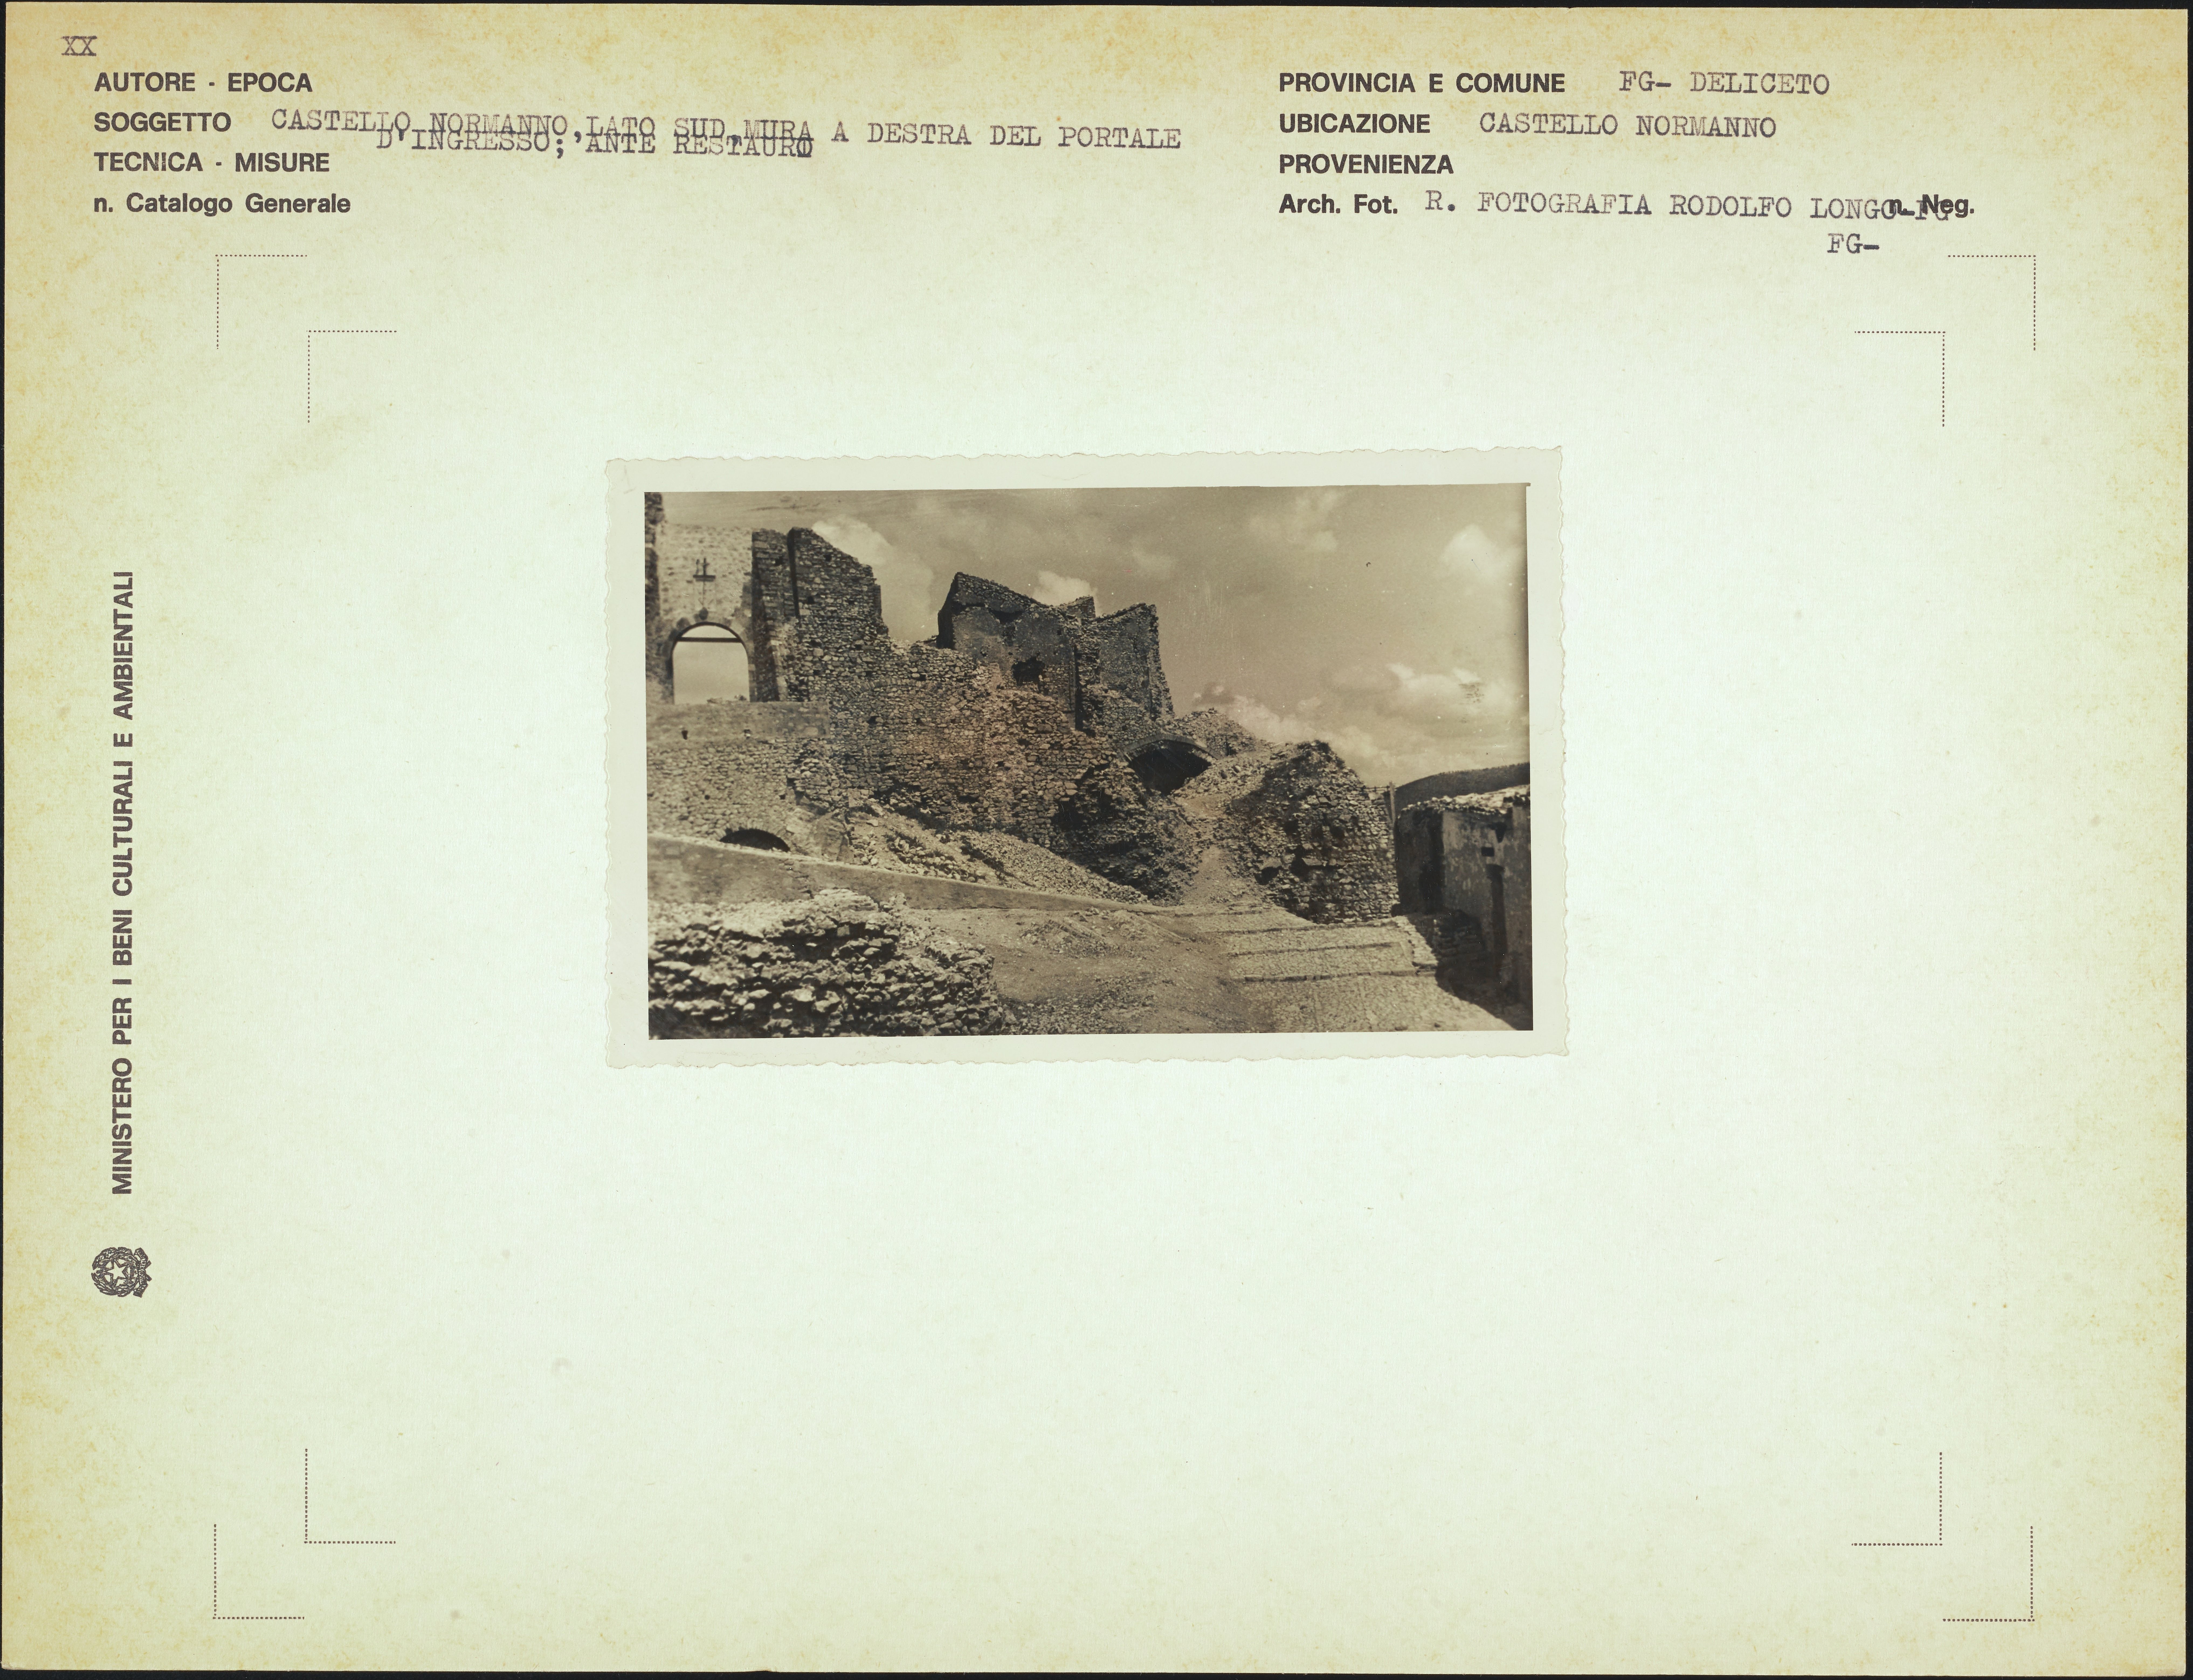 Longo Rodolfo, Deliceto - castello normanno, 1941-1960, gelatina ai sali d'argento, MPI157370